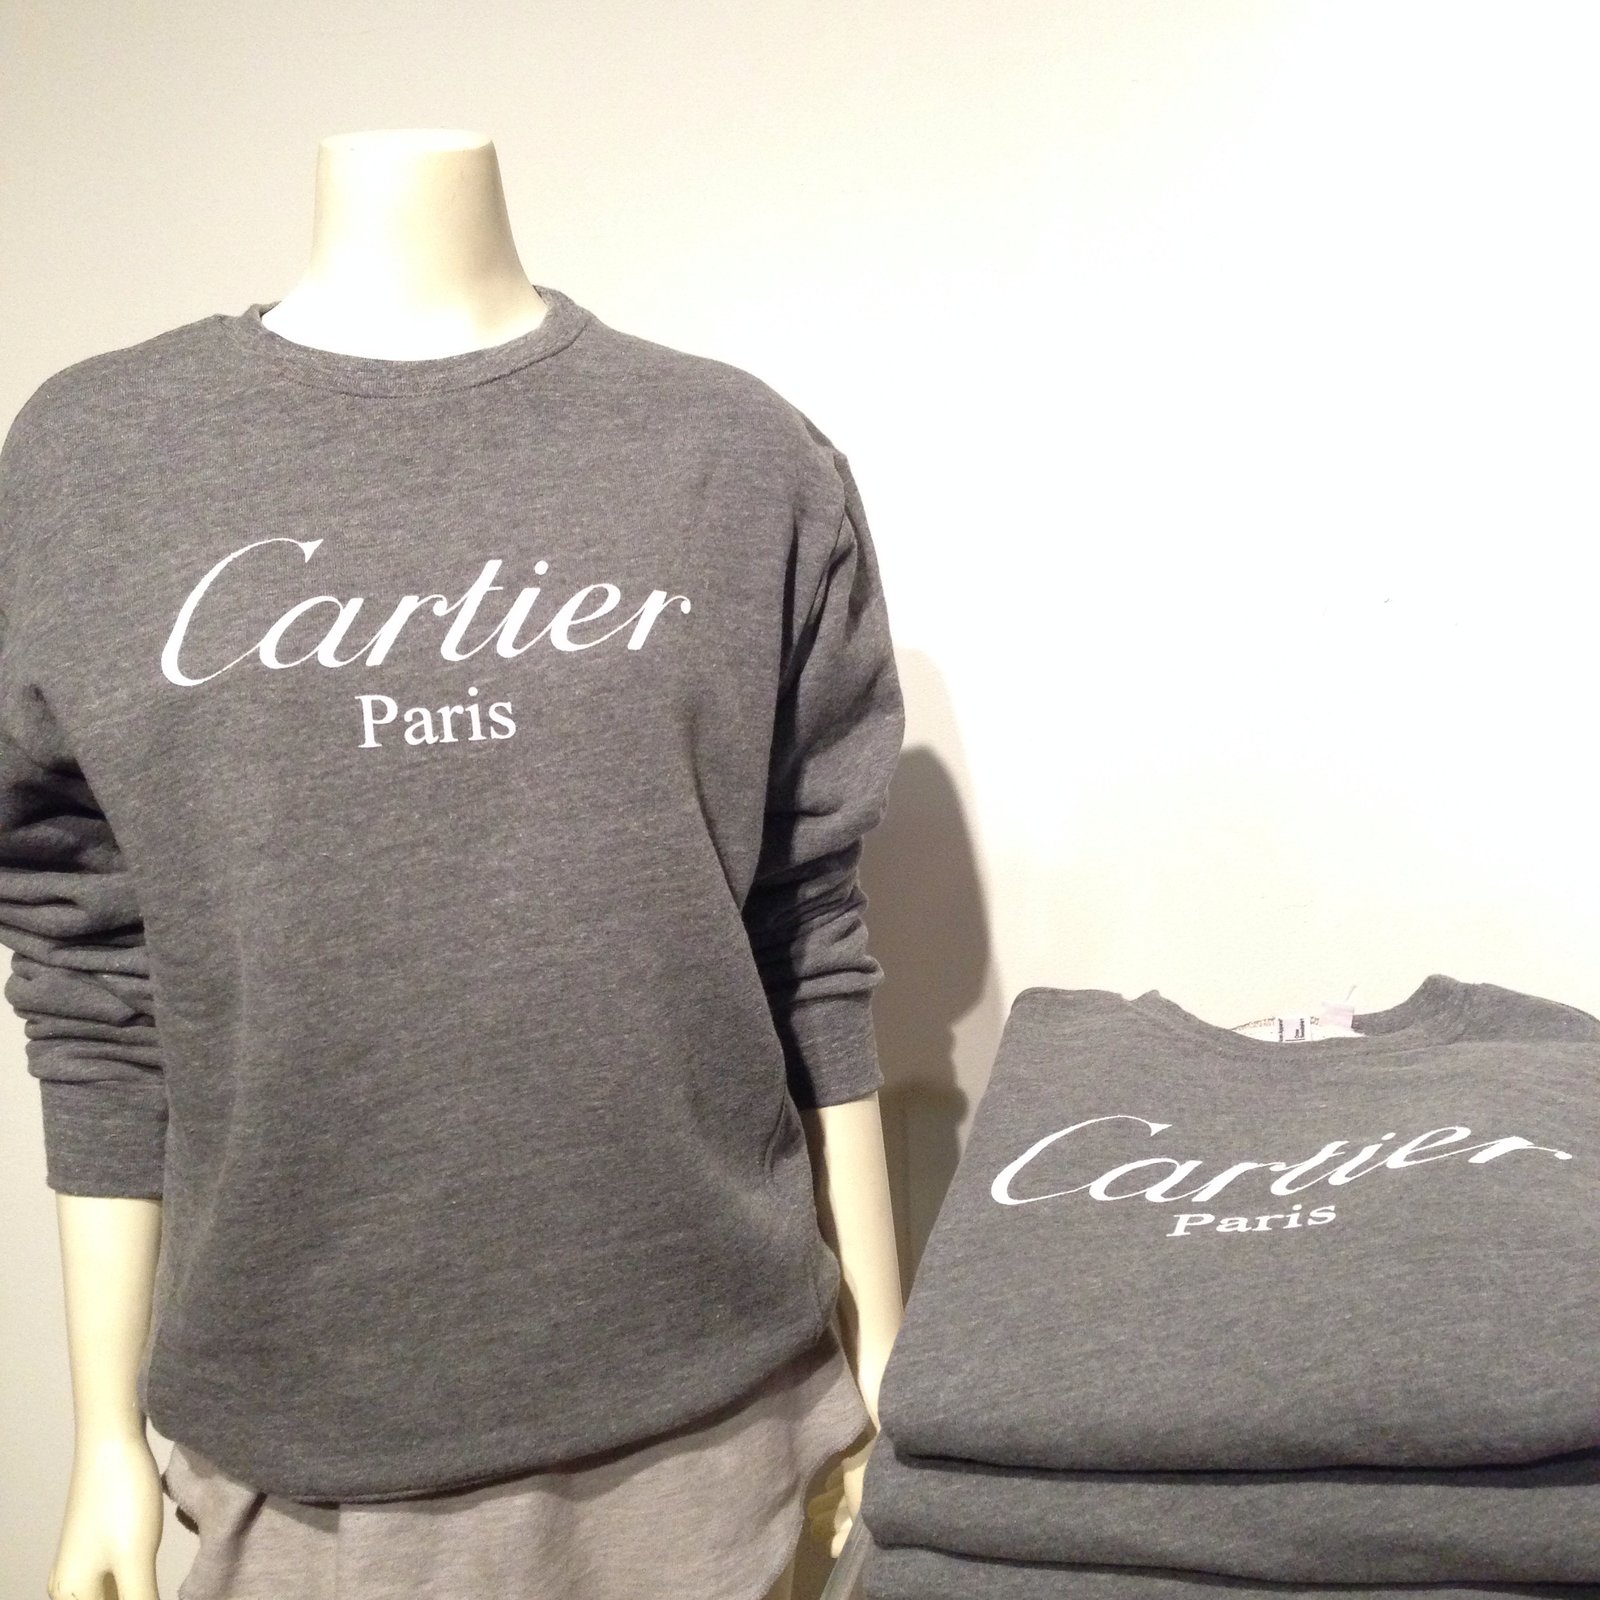 cartier sweatshirt